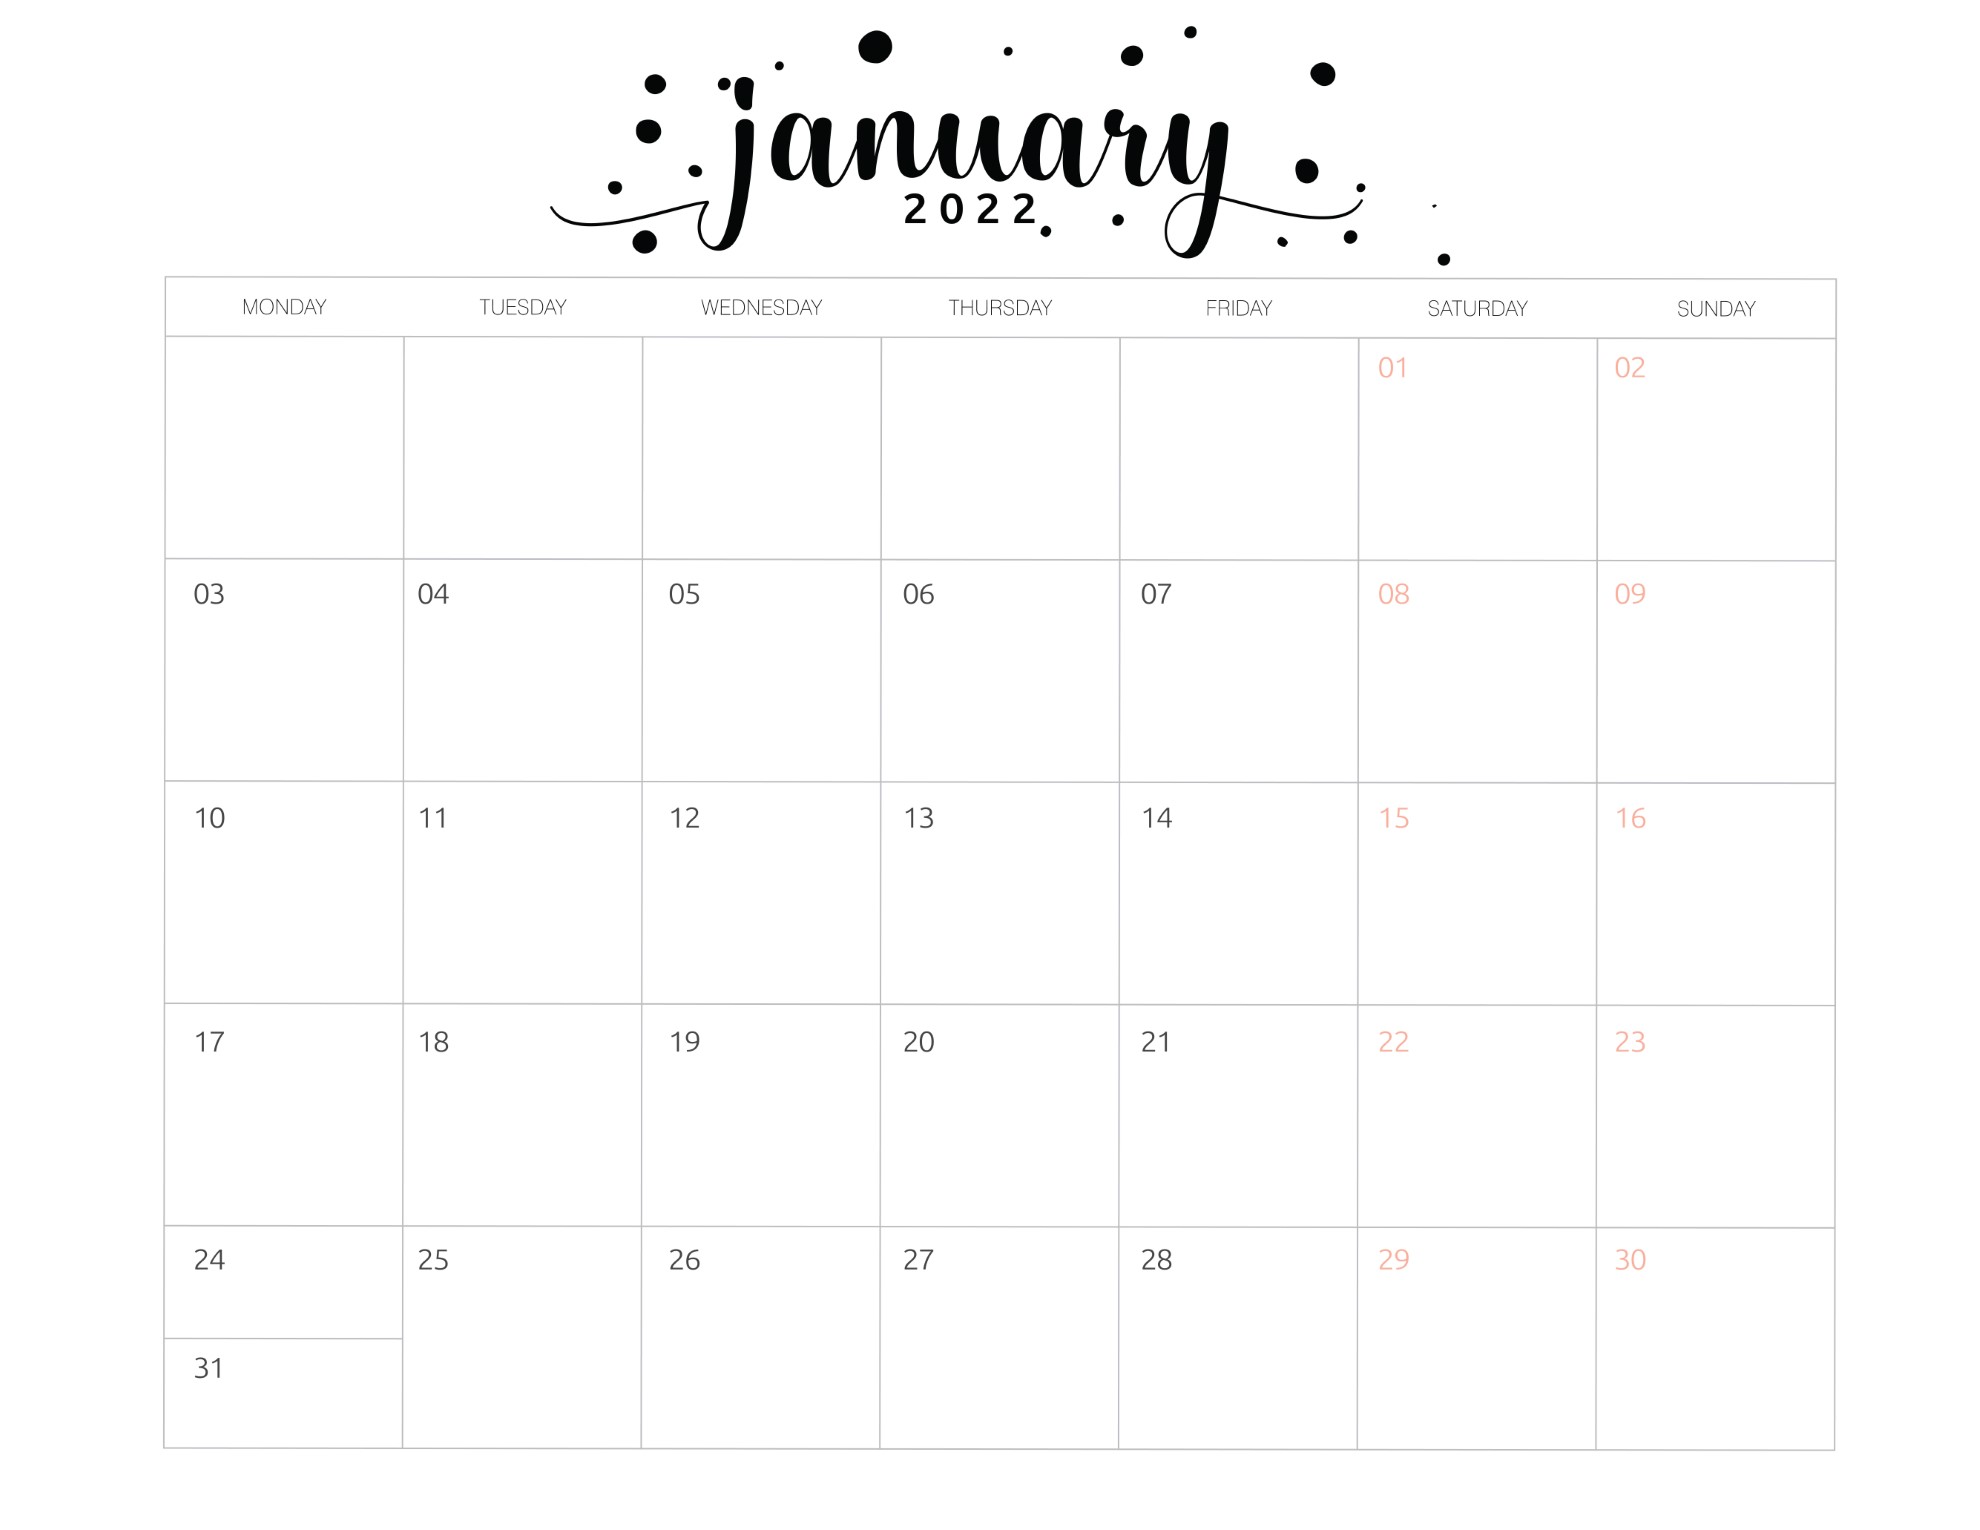 calendario 2022 basico janeiro